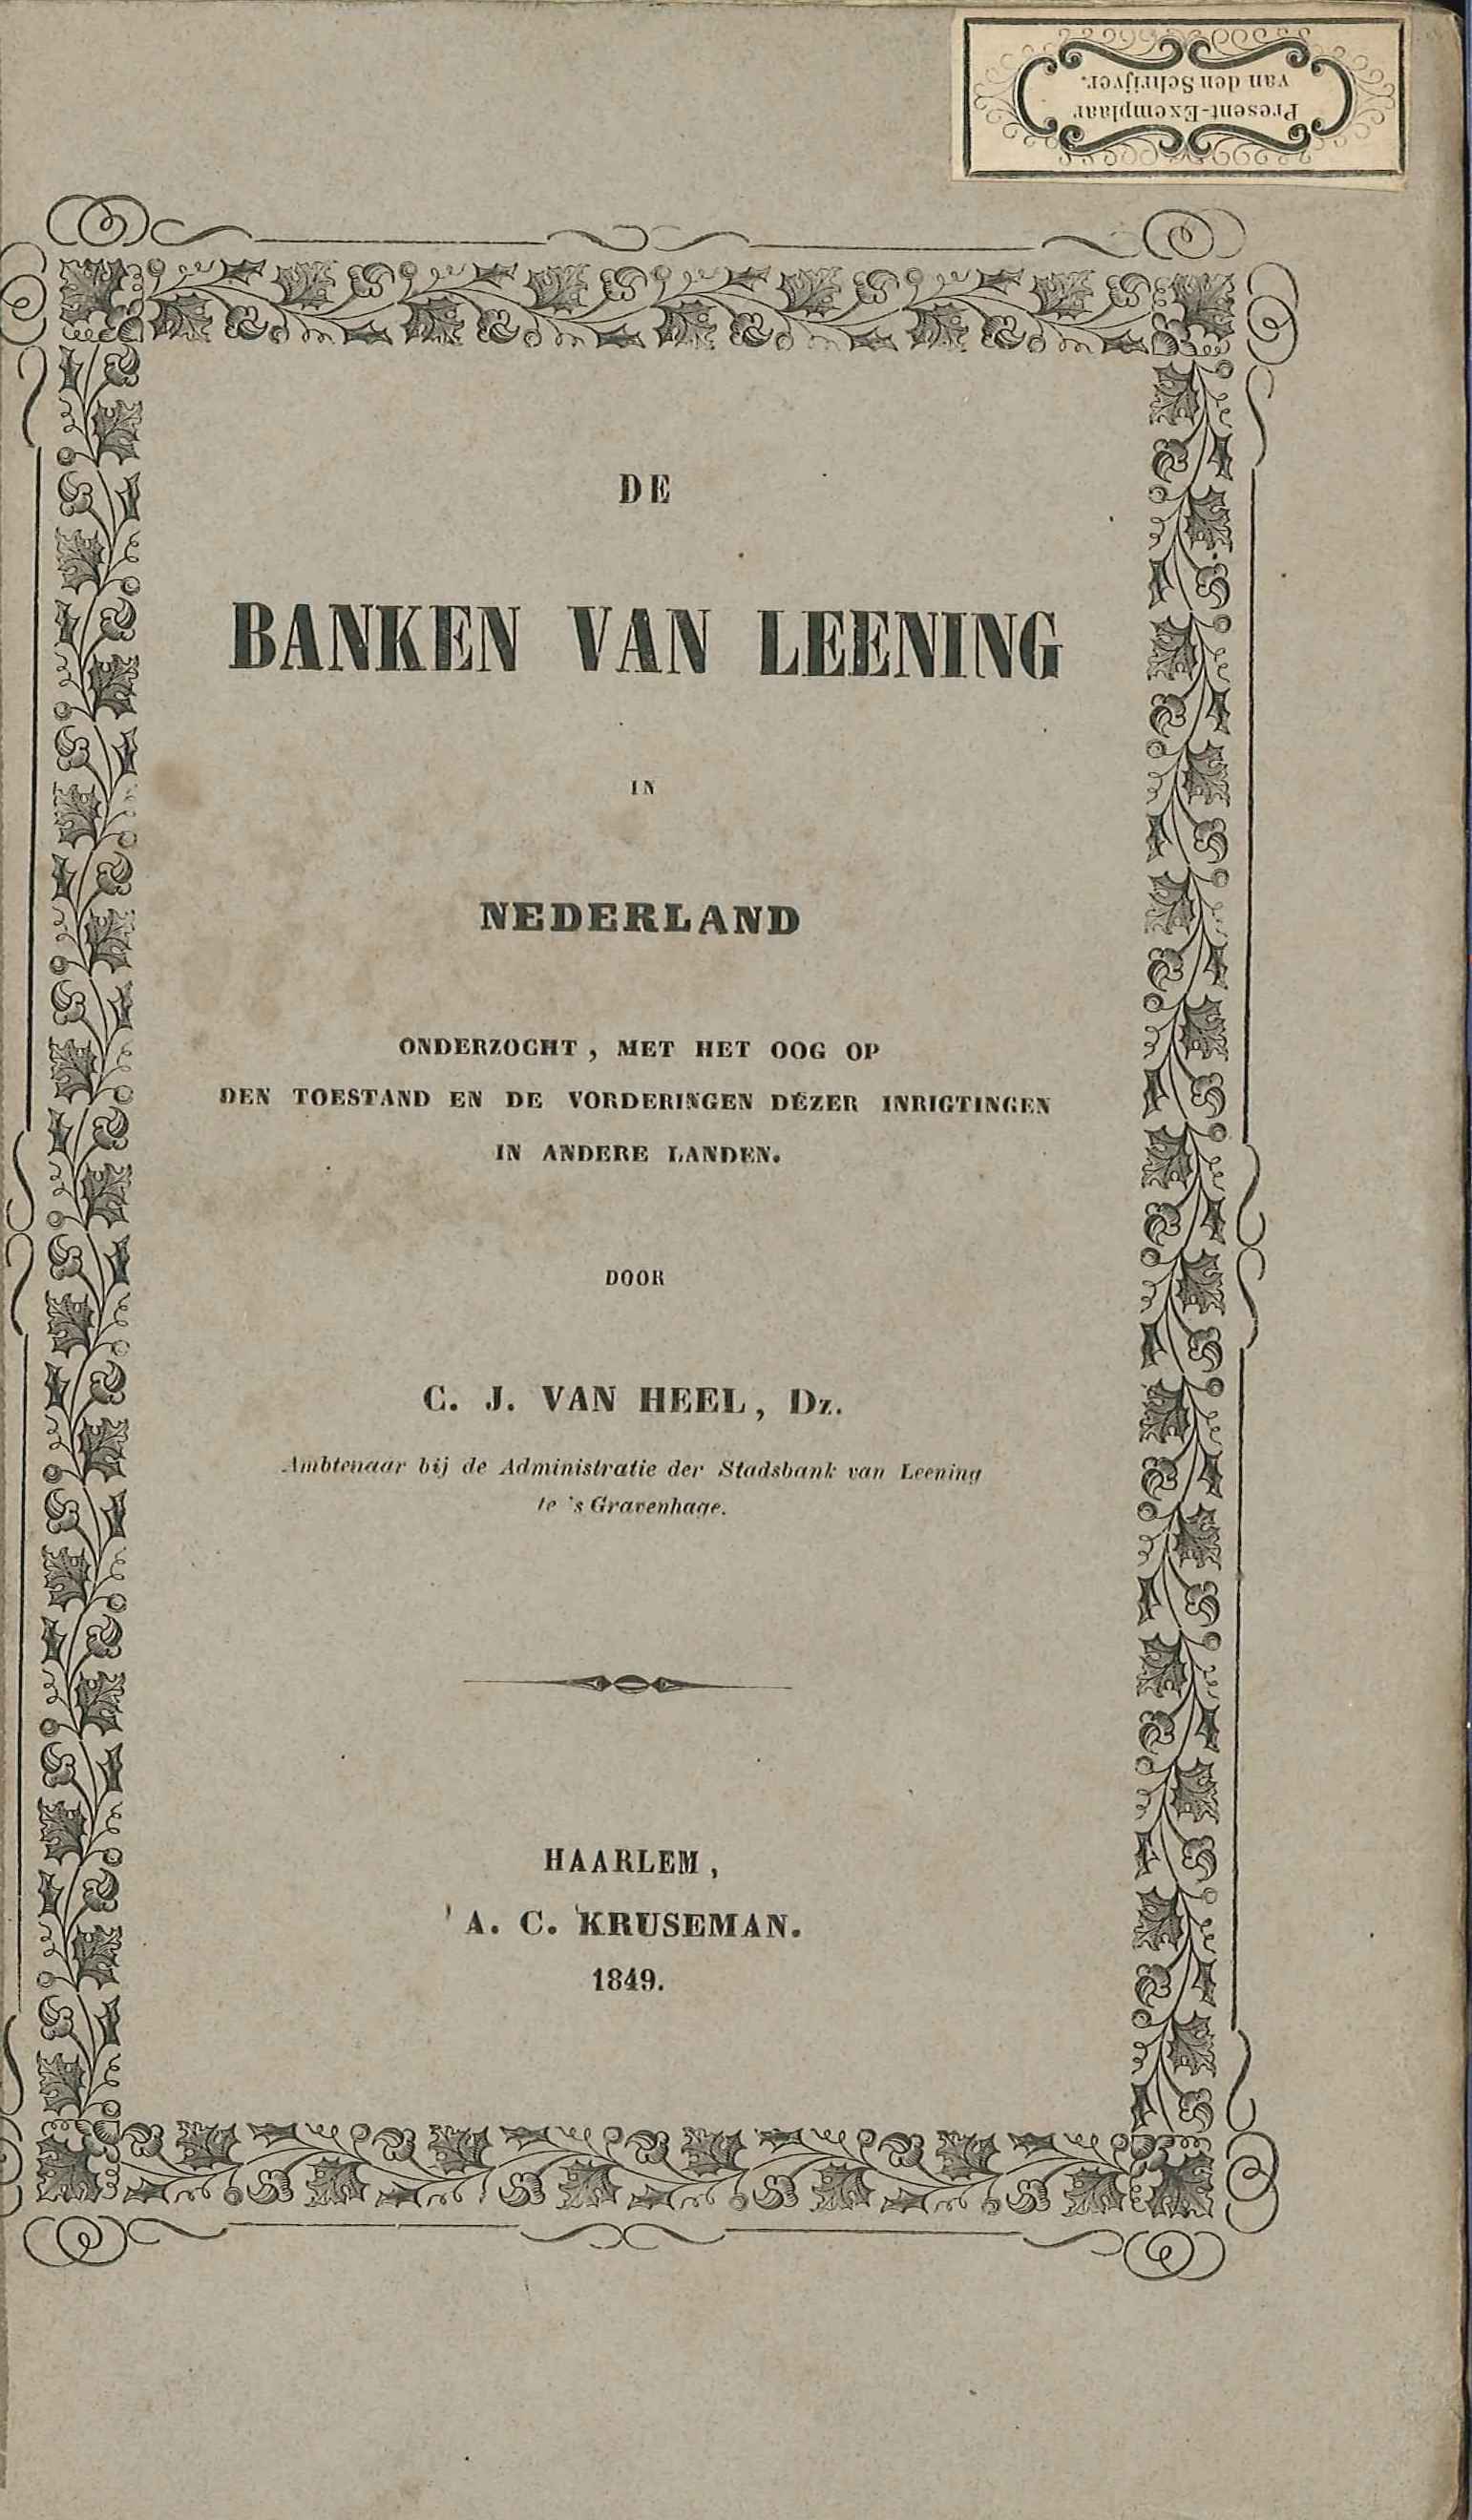 De banken van leening in Nederland, door dr. C.J. van Heel, ambtenaar bij deze bank in Den Haag, later te Goes, 1849. GAG.HB.